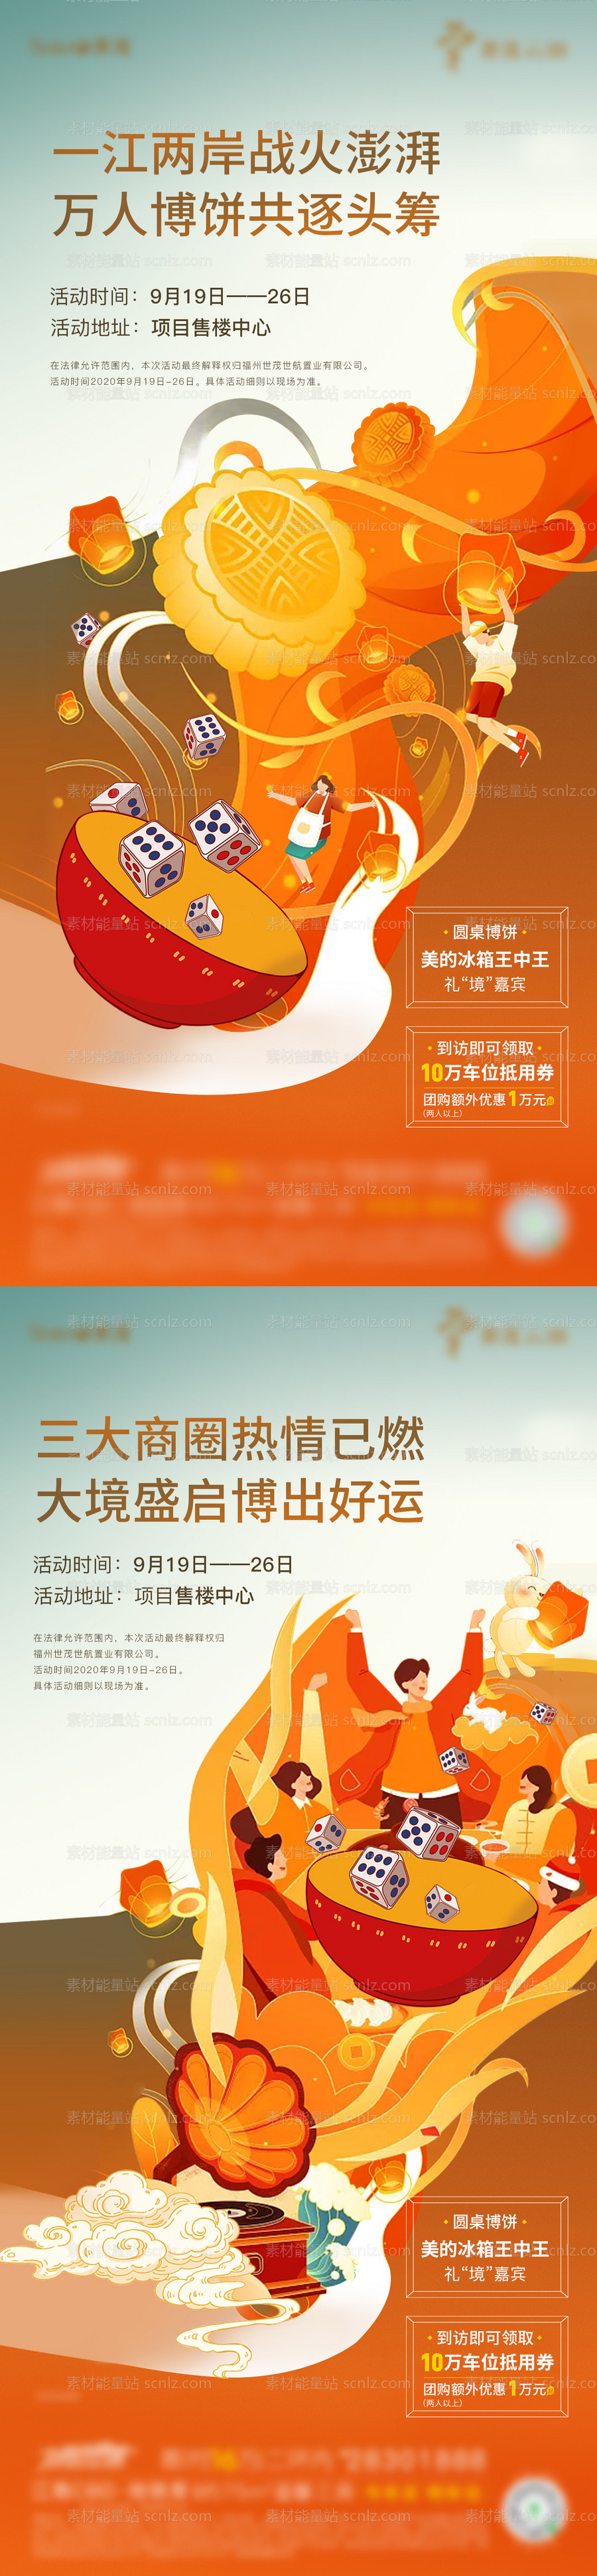 素材能量站-地产中秋博饼活动系列海报